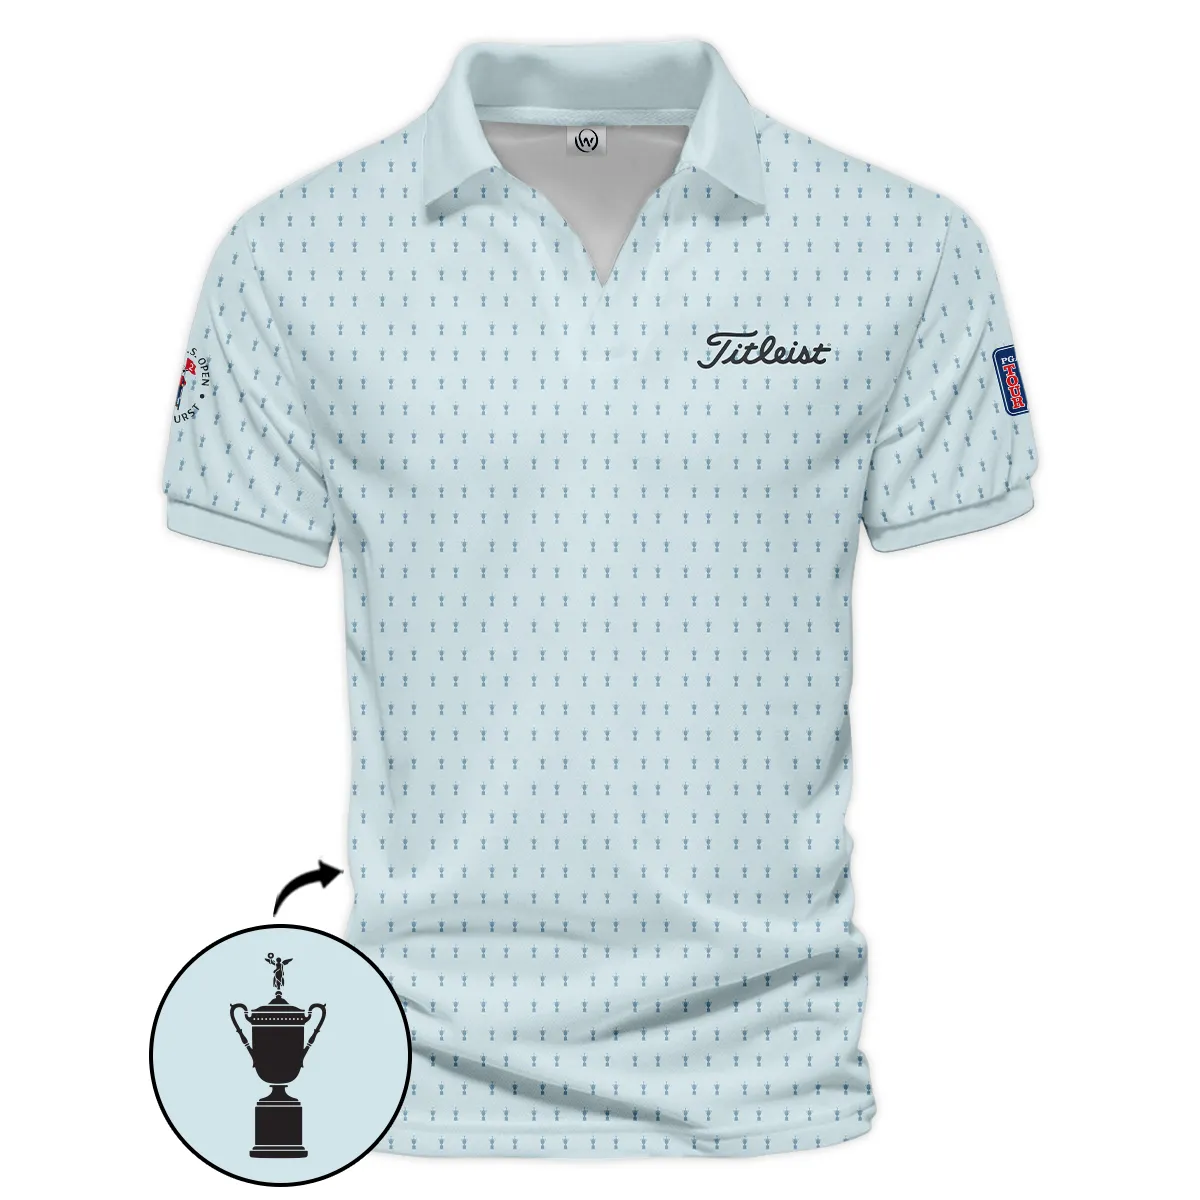 Golf Pattern Cup Light Blue Mix Green 124th U.S. Open Pinehurst Pinehurst Titleist Zipper Polo Shirt Style Classic